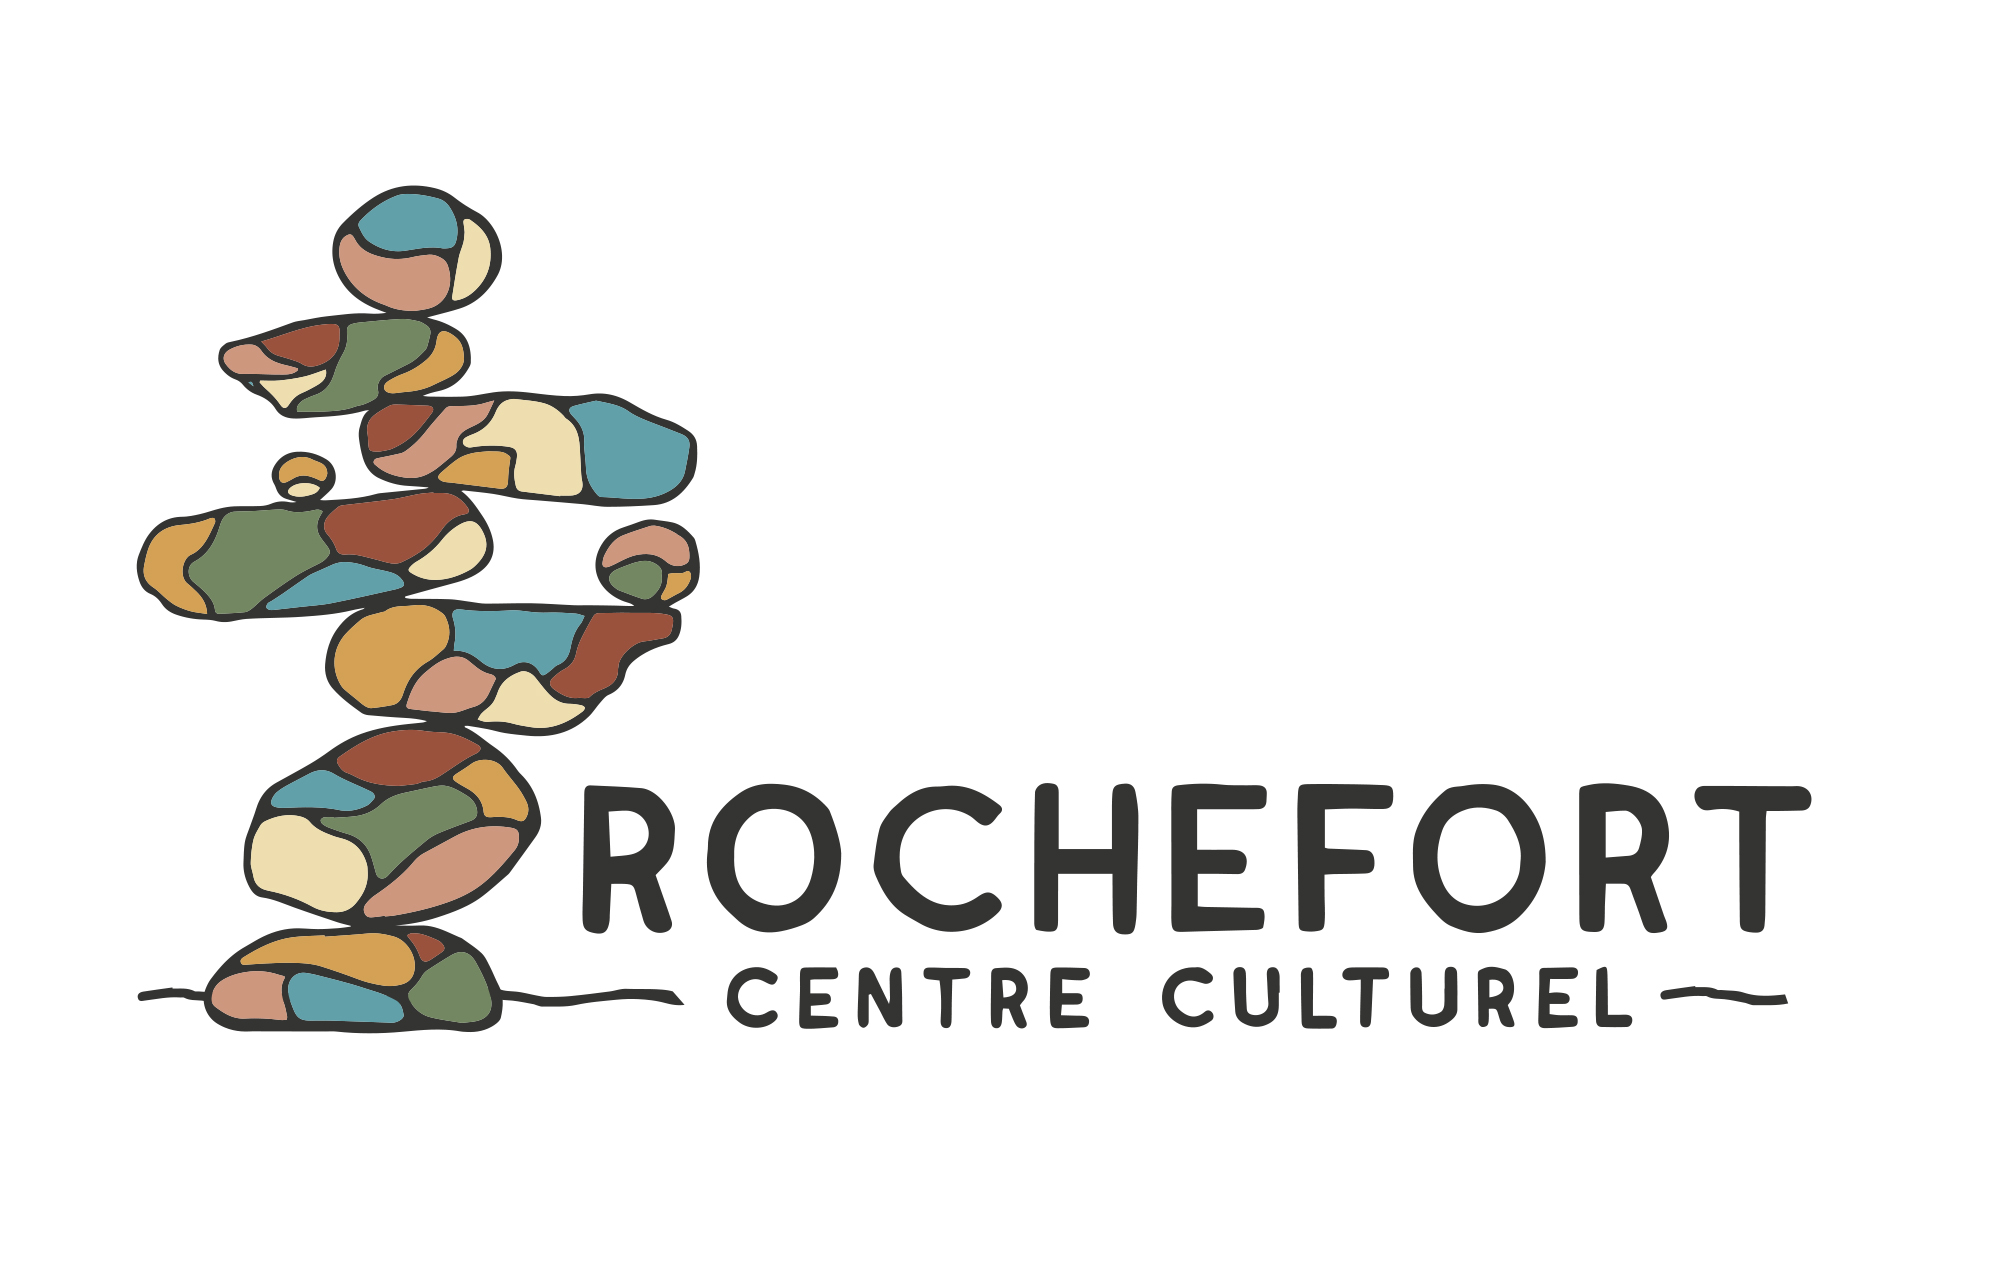 Centre Culturel des Roches